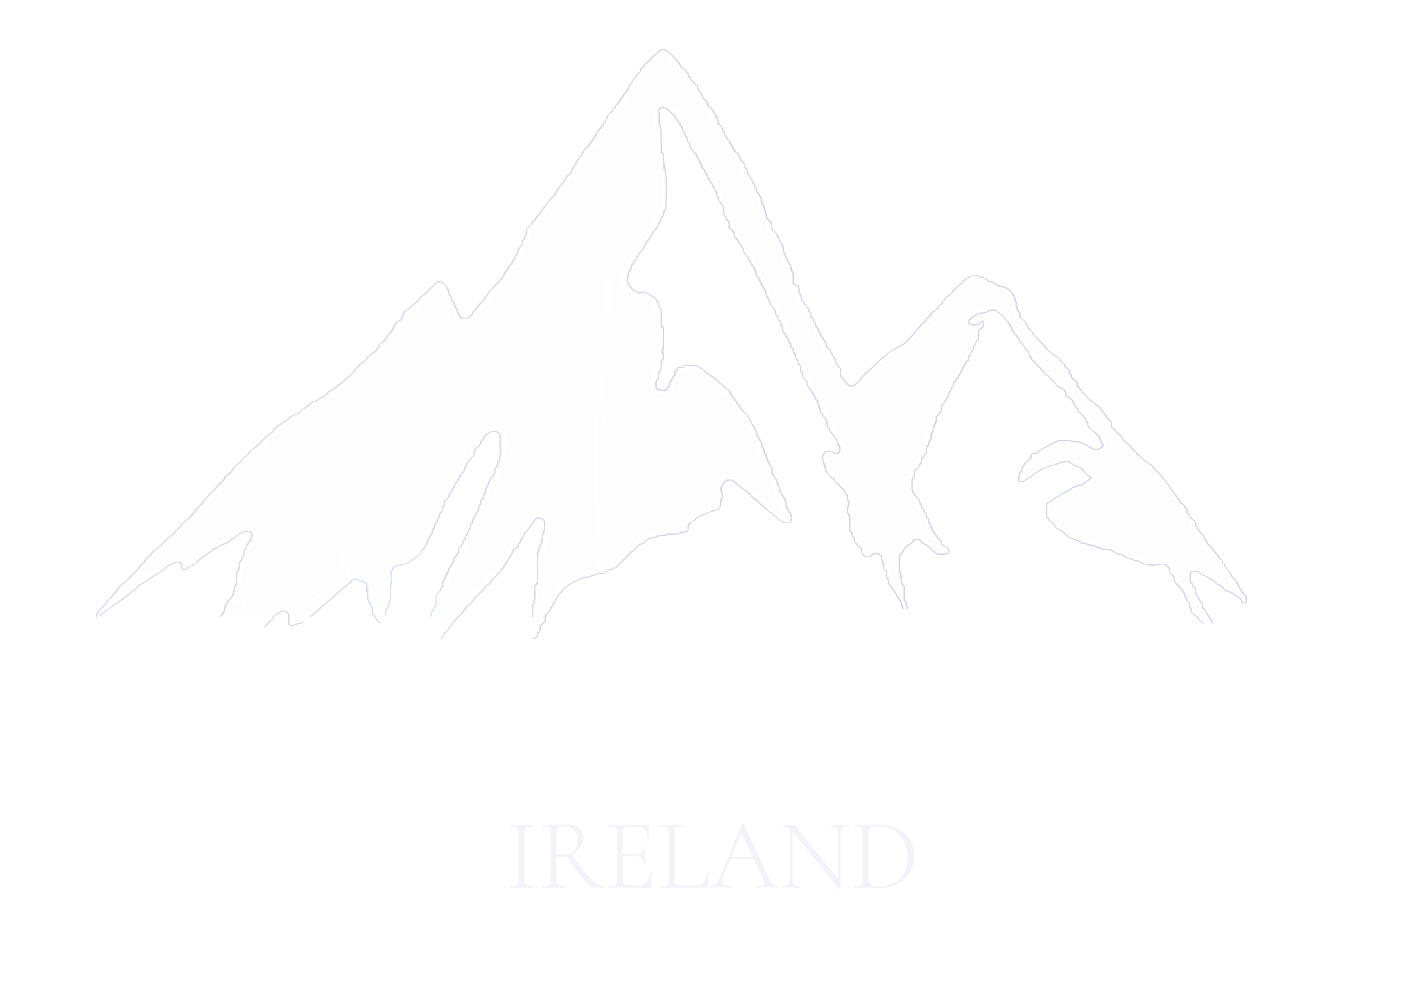 WildMed Ireland